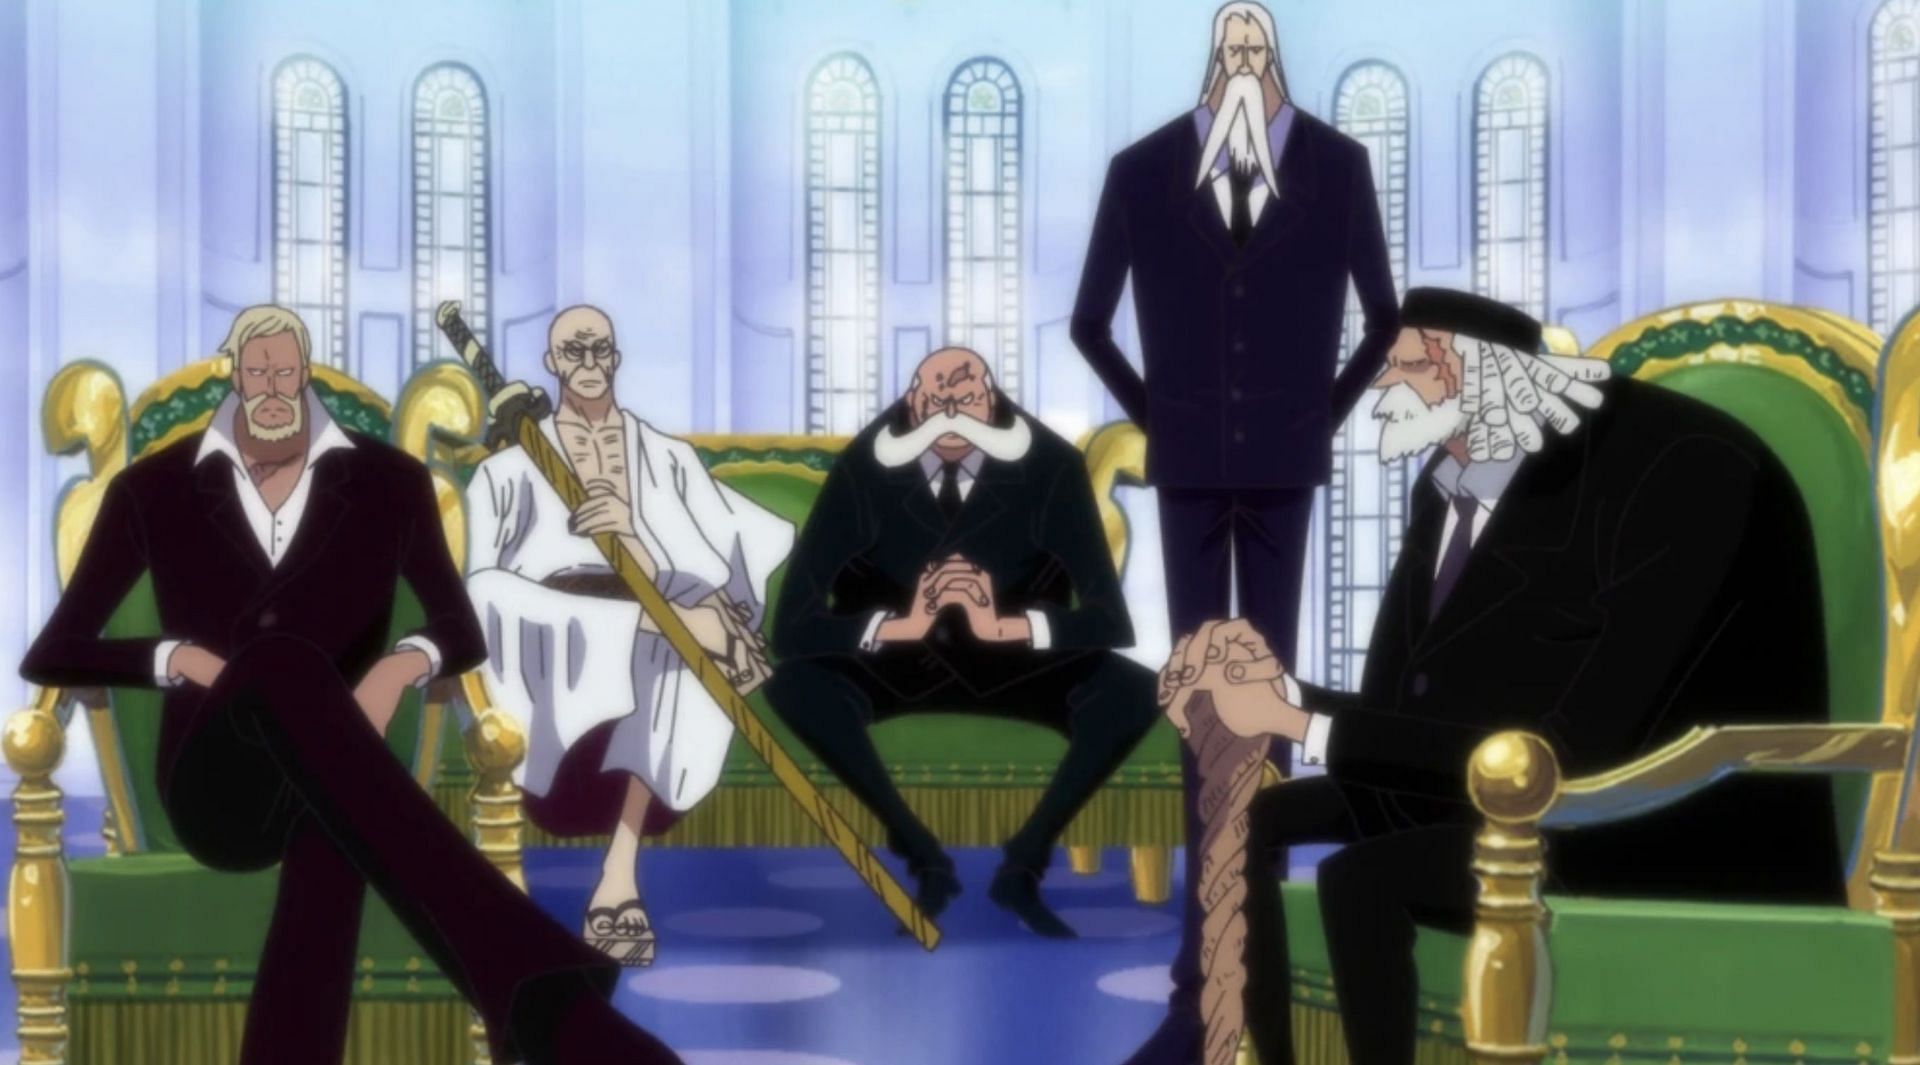 Five Elders as seen in anime (Image via Toei Animation)